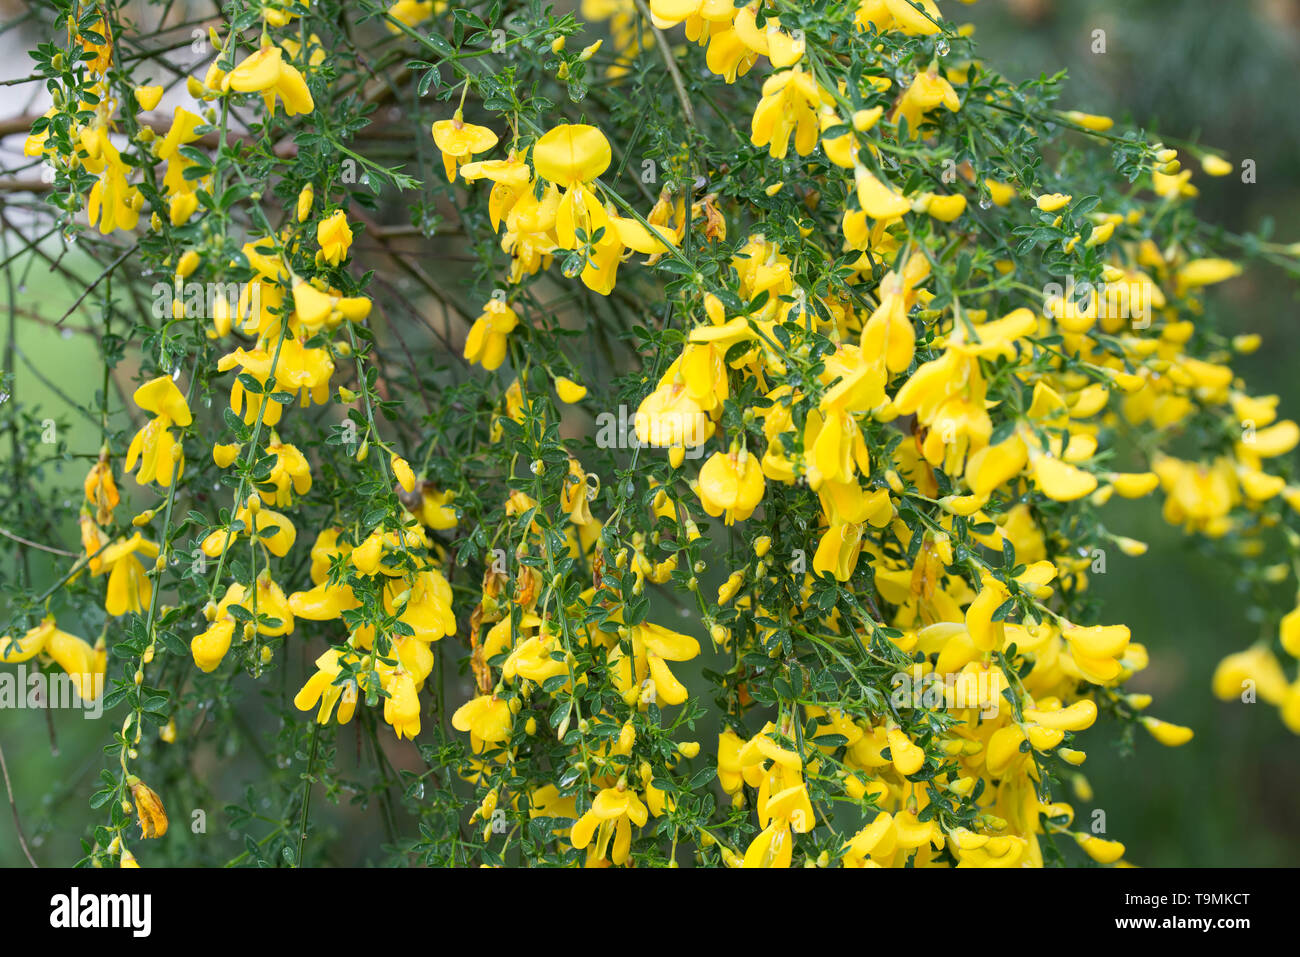 cytisus, brooms yellow flowers on twig macro Stock Photo